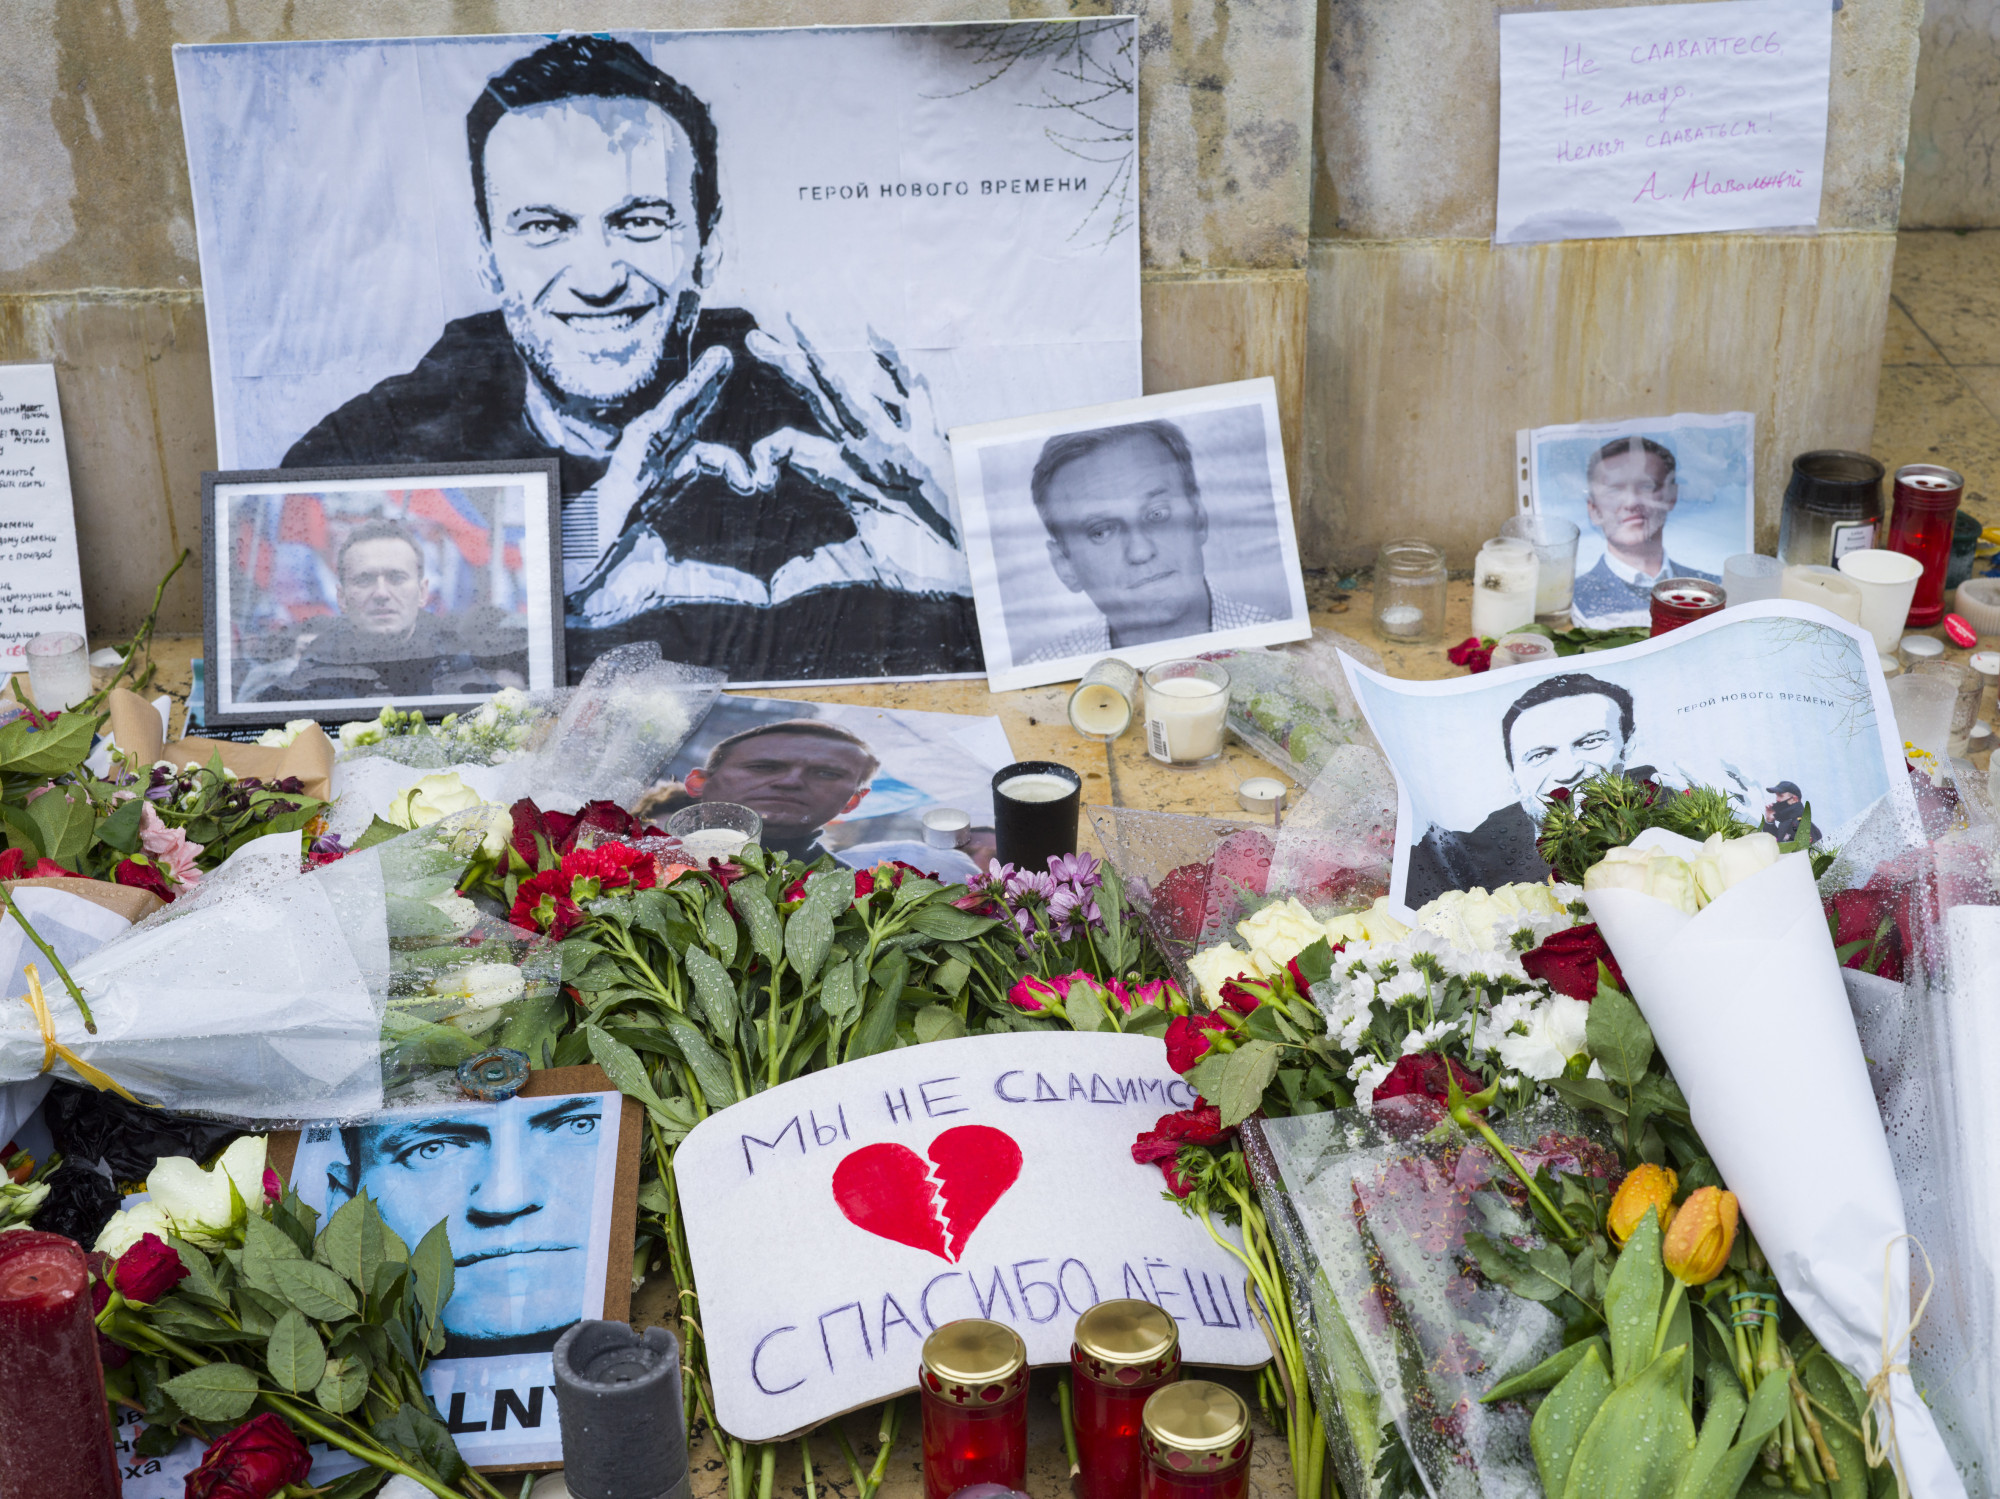 Több európai országban bekérették az orosz nagykövetet Navalnij halála miatt